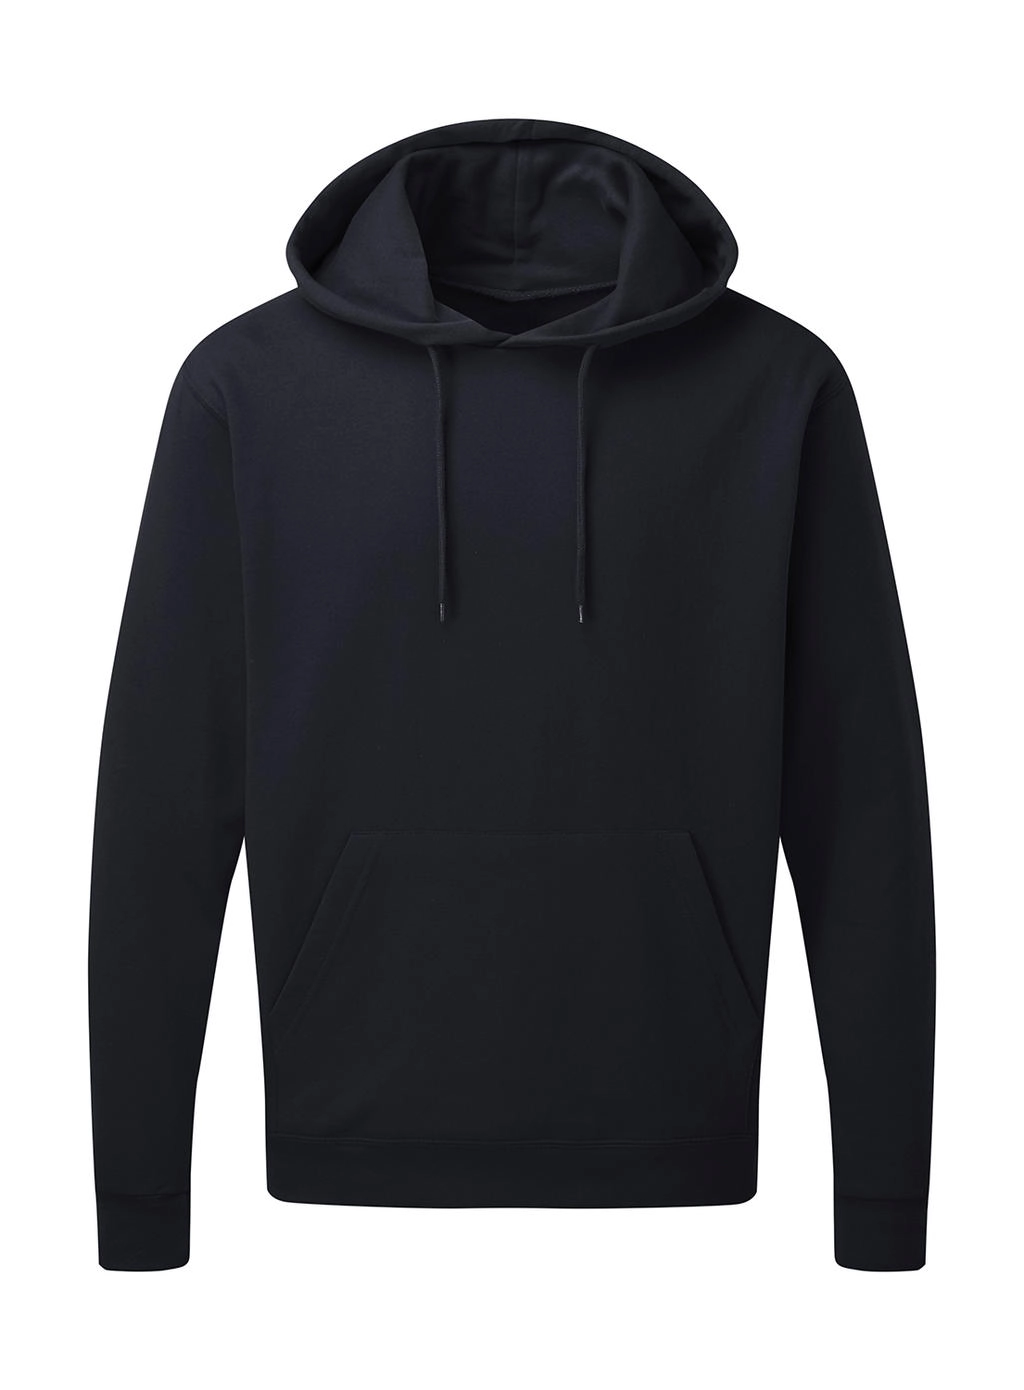 Hooded Sweatshirt Men zum Besticken und Bedrucken in der Farbe Navy mit Ihren Logo, Schriftzug oder Motiv.